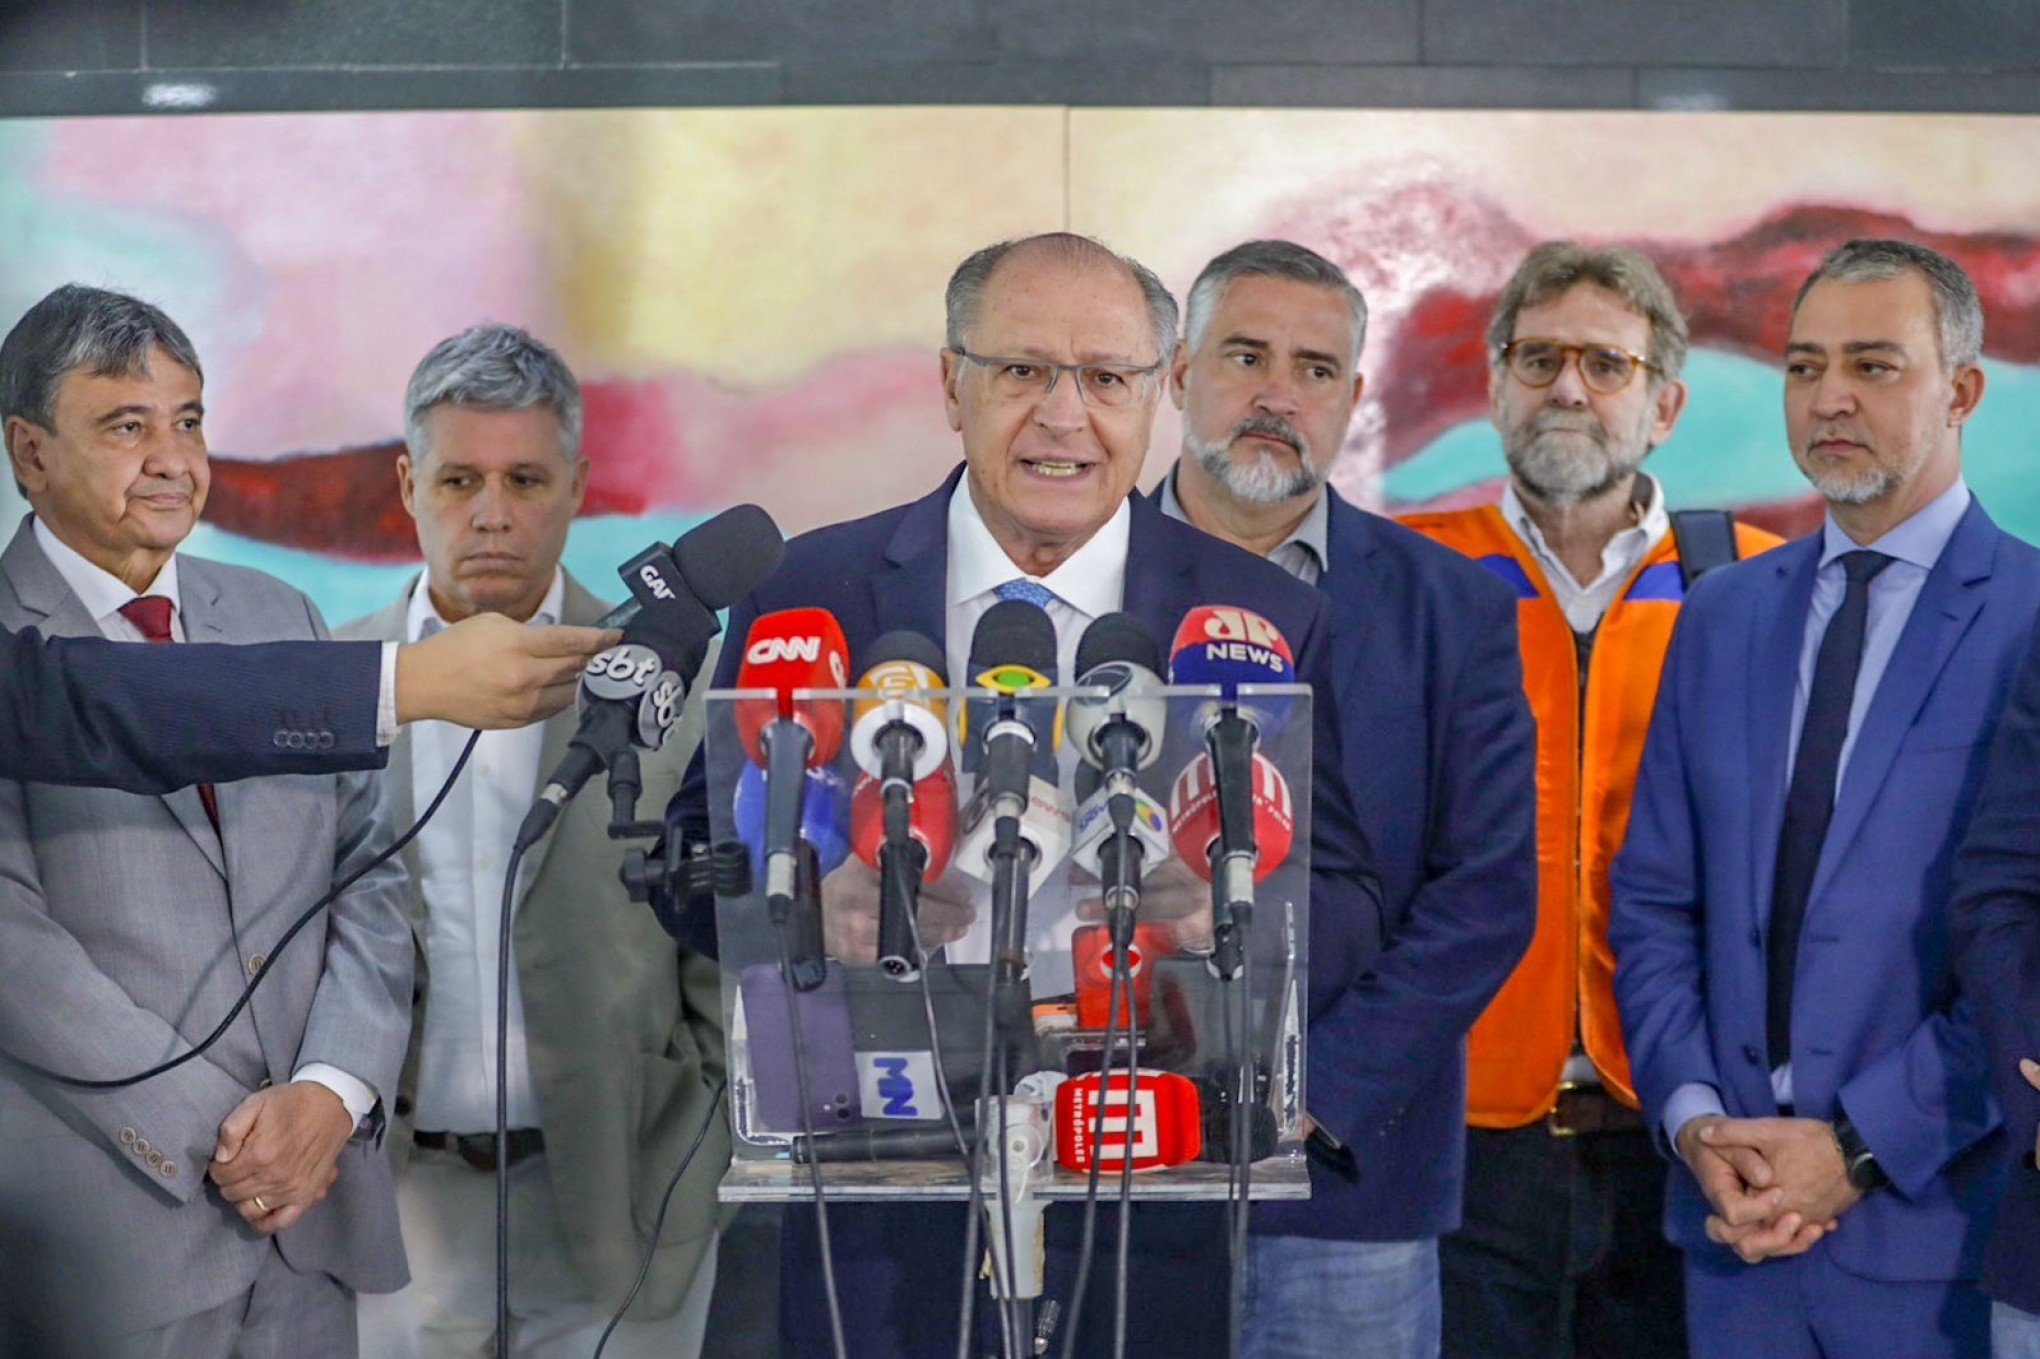 CATÁSTROFE NO RS: Alckmin anuncia repasse de R$ 800 por pessoa desabrigada e vinda ao RS